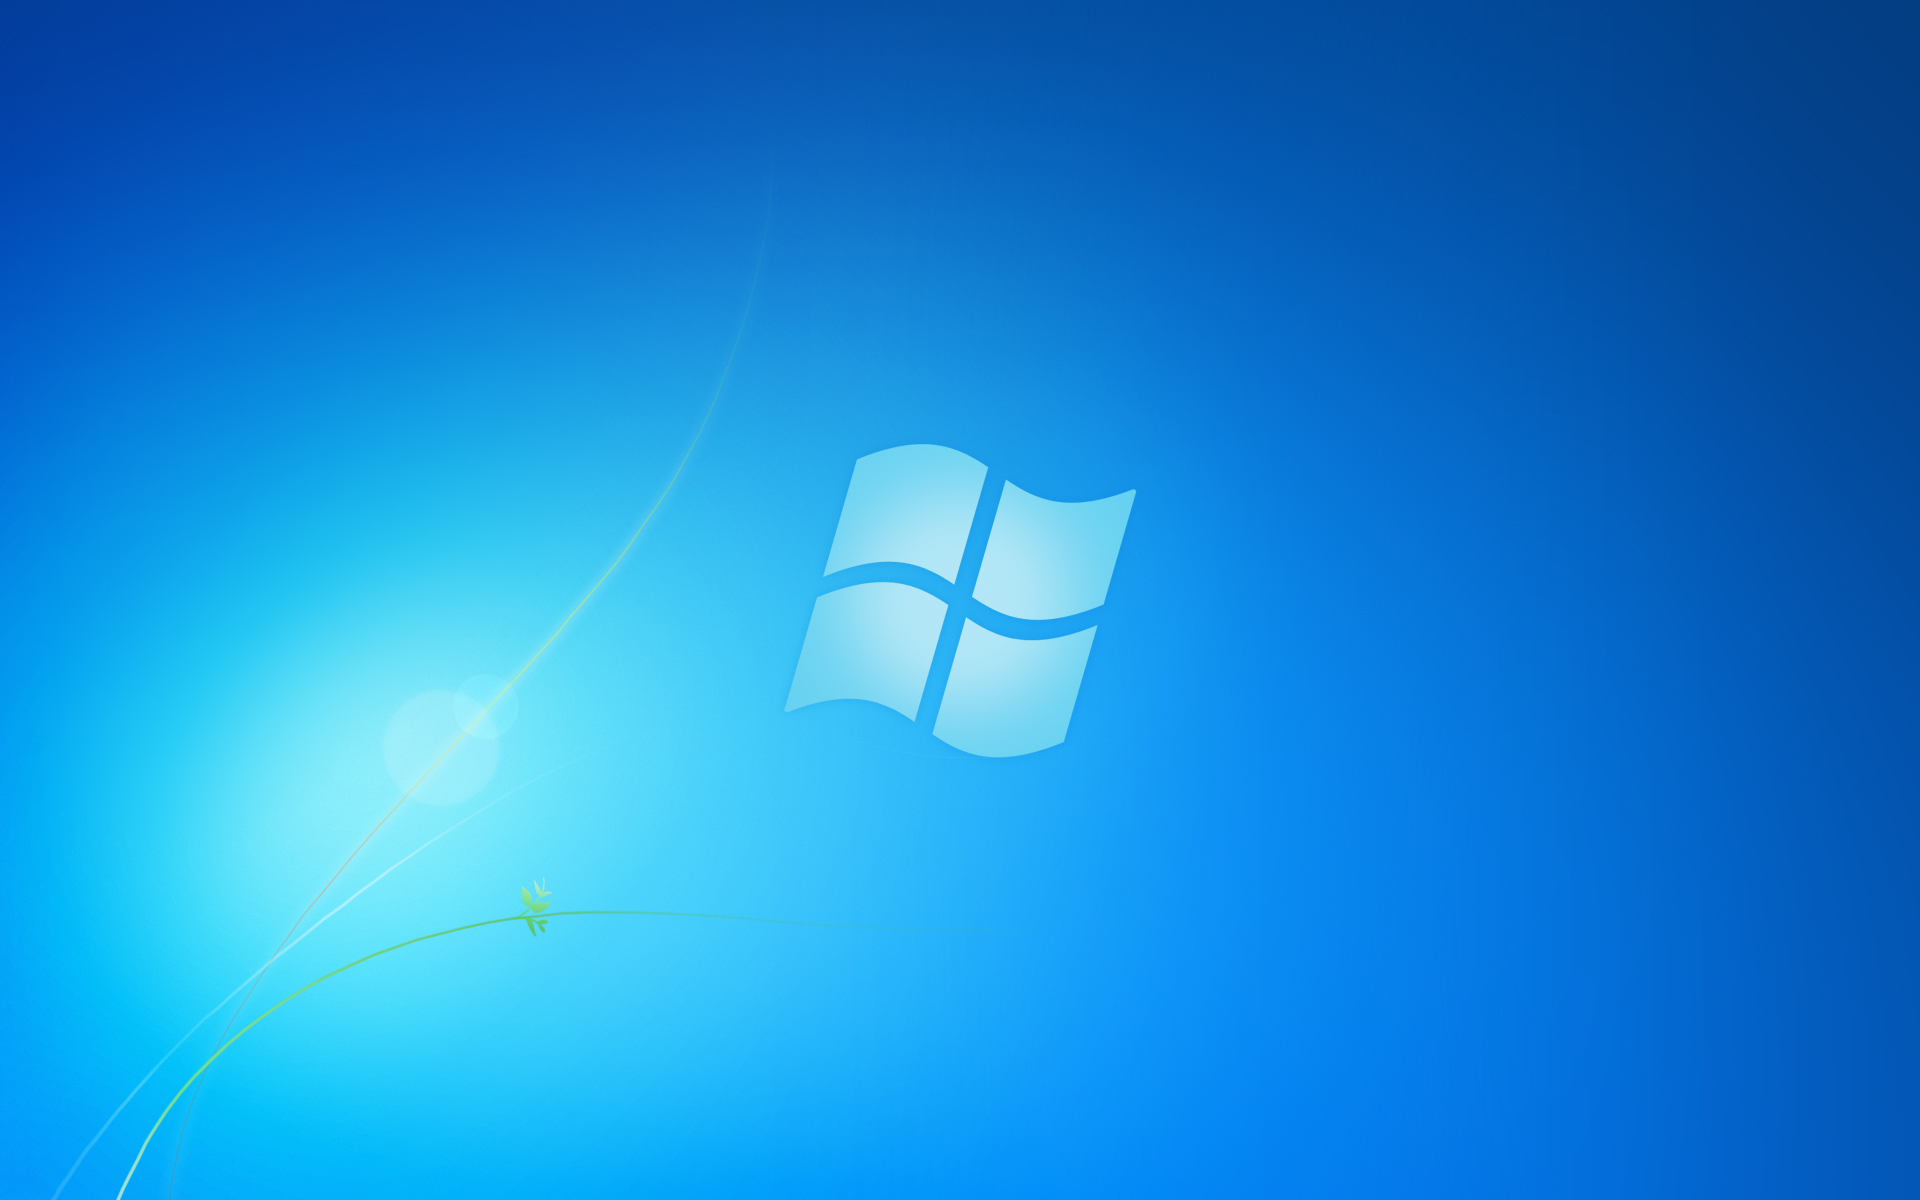 Windows 7 không chỉ là một hệ điều hành thông thường, đó là một nền tảng kết hợp giữa tính thẩm mỹ và sức mạnh công nghệ. Với những tính năng, giao diện hiện đại cùng một cộng đồng phát triển đầy năng lực, Windows 7 đã trở thành một bước đột phá trong lịch sử công nghệ. Hãy khám phá và trải nghiệm nền tảng tuyệt vời này ngay bây giờ.